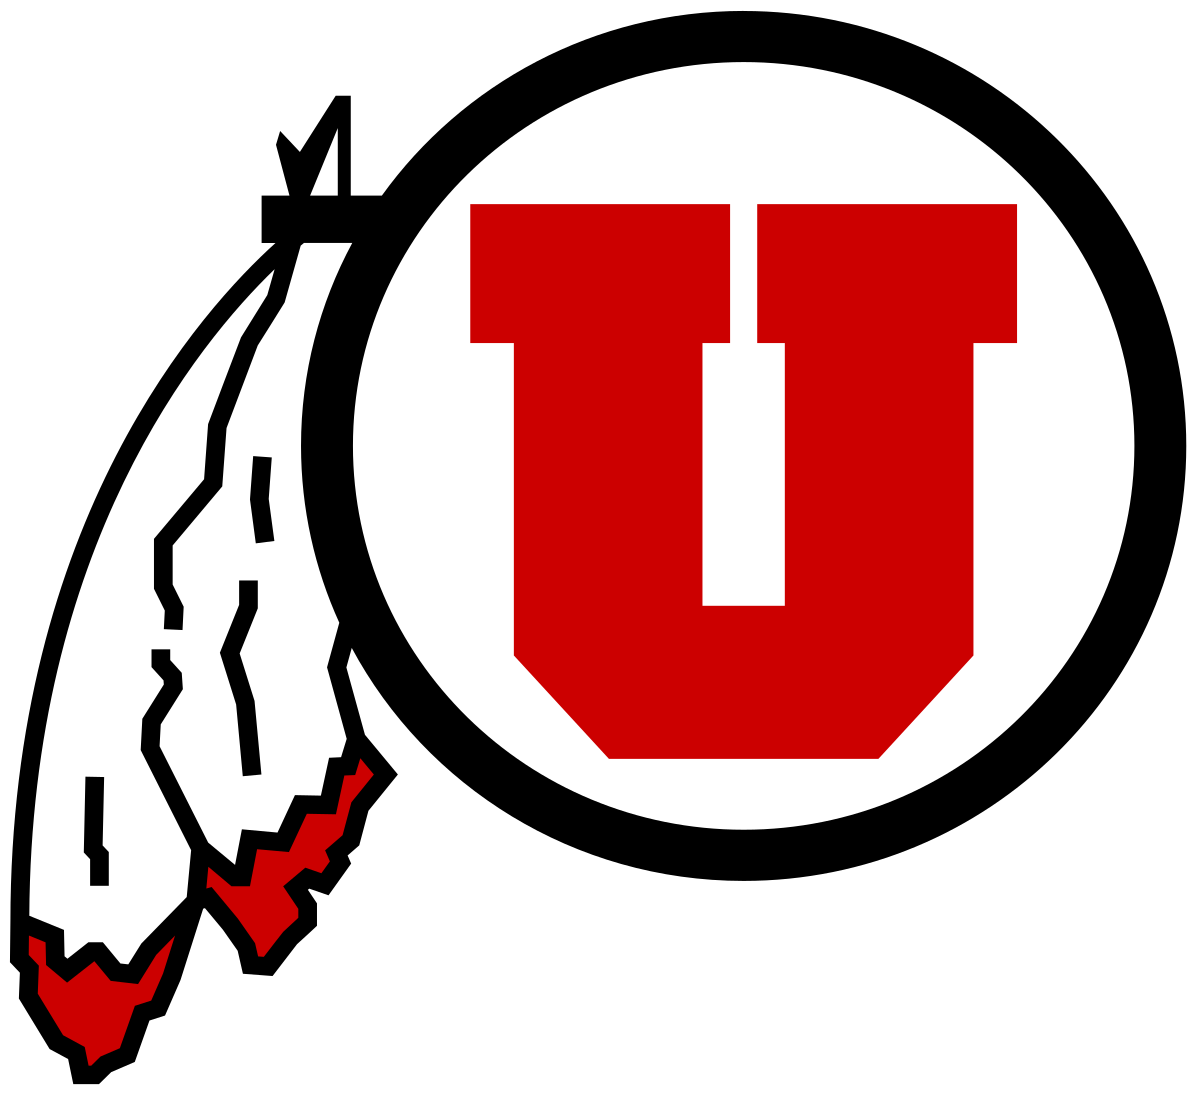 *W: Utah